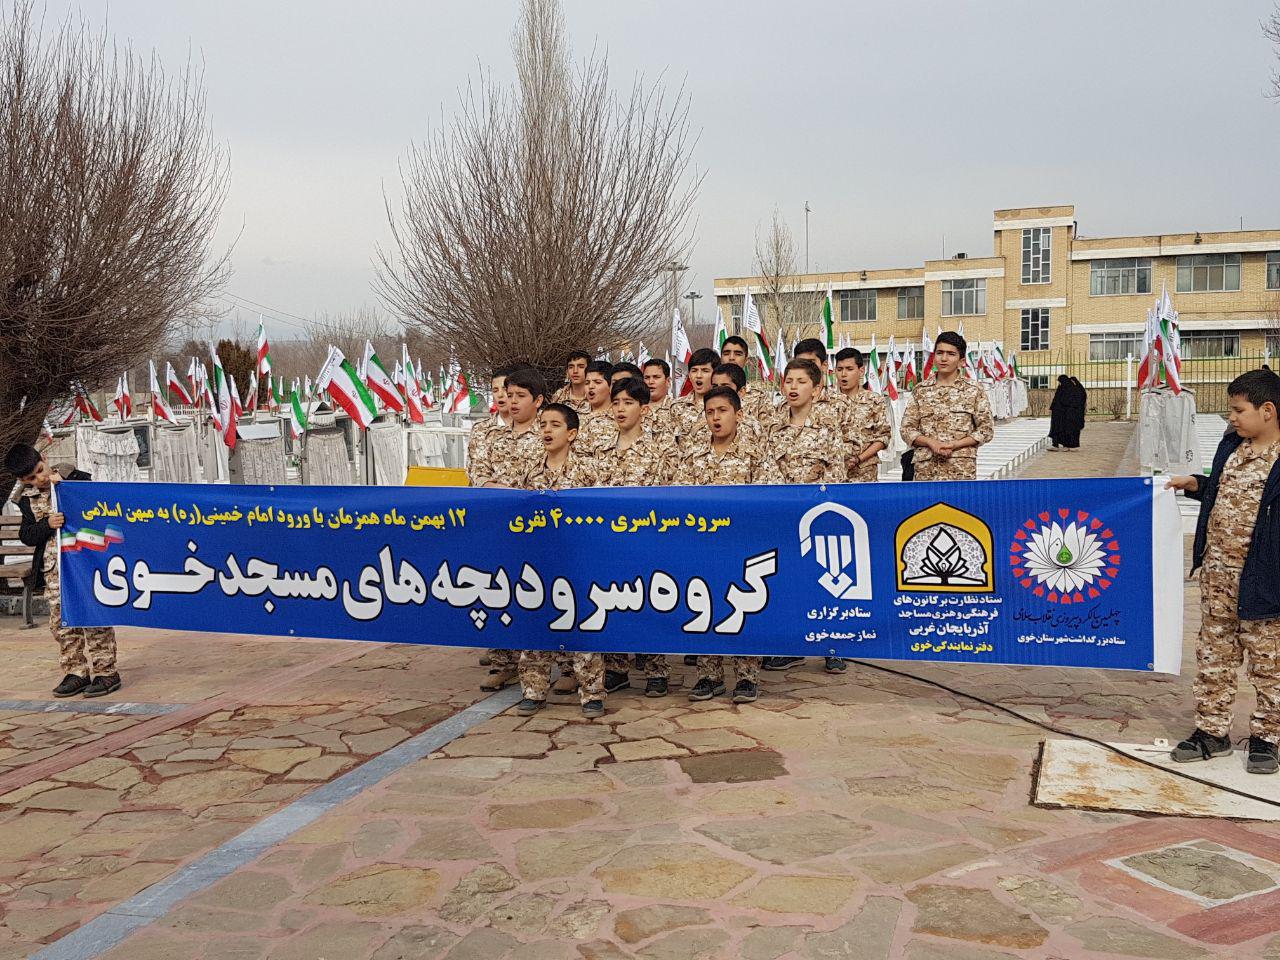 اجرای گروه سرود بچه های مسجد شهرستان خوی در مزار شهداء